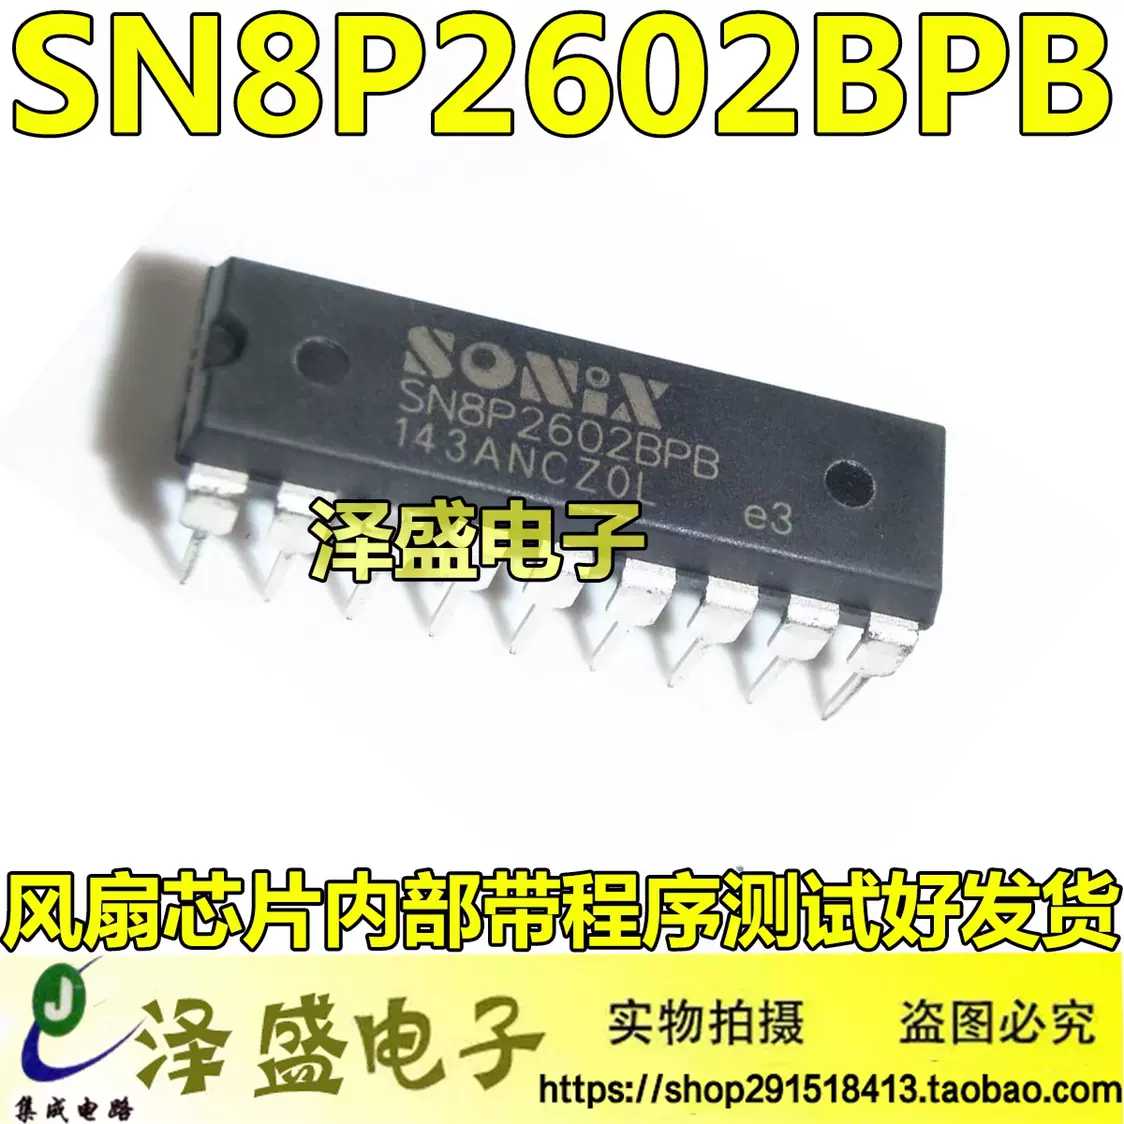 XSTK05B 触摸芯片IC 集成电路芯片IC 贴片SOP28 可直拍欢迎咨询-Taobao